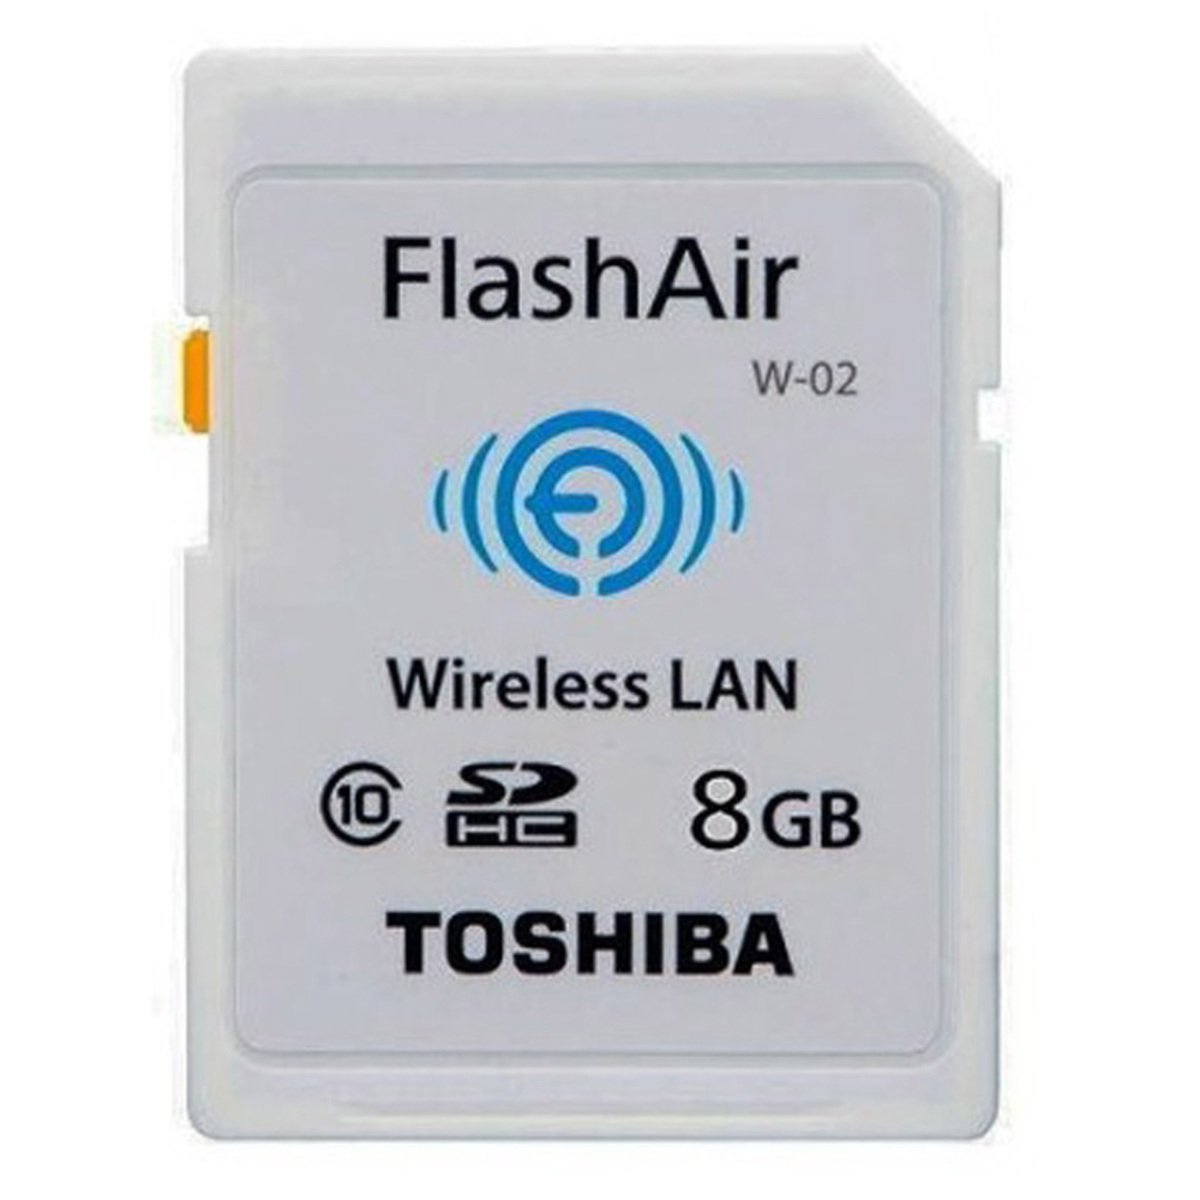 Toshiba SD Card C10 Flash Air 8GB